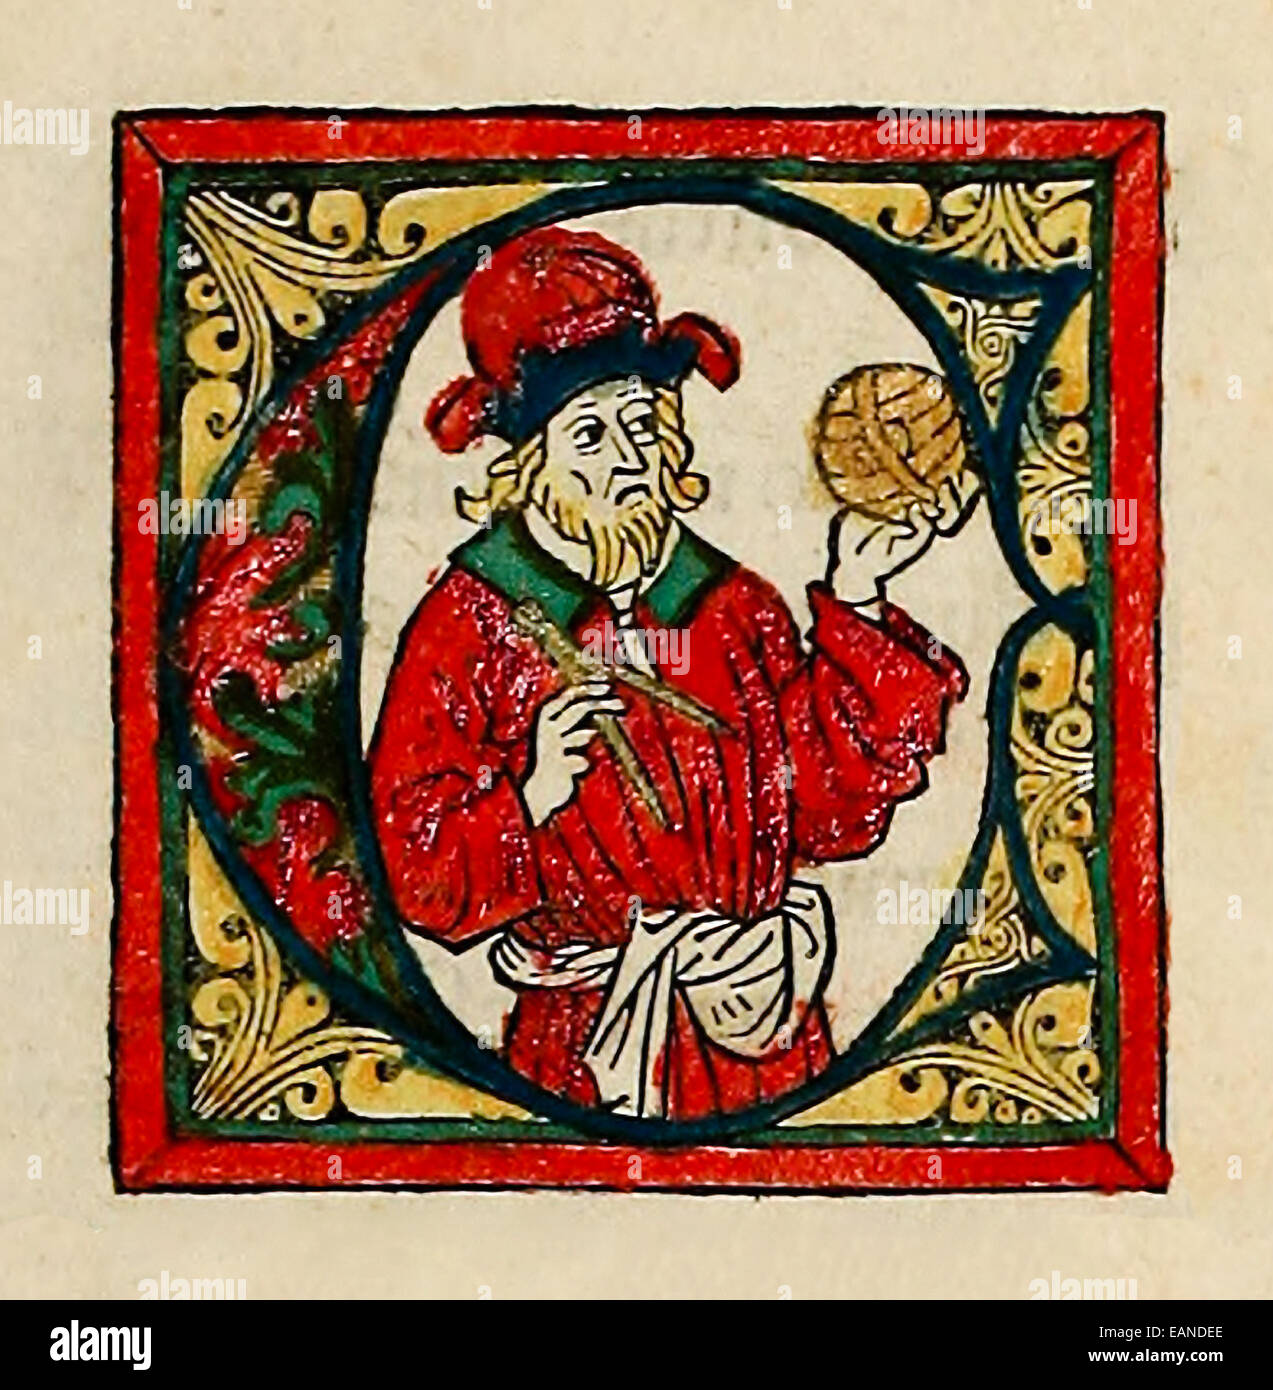 Anfängliche Feat dekoriert. Ptolemäus von "Cosmographia" von Claudius Ptolemäus veröffentlicht 1482. Siehe Beschreibung für mehr Informationen. Stockfoto